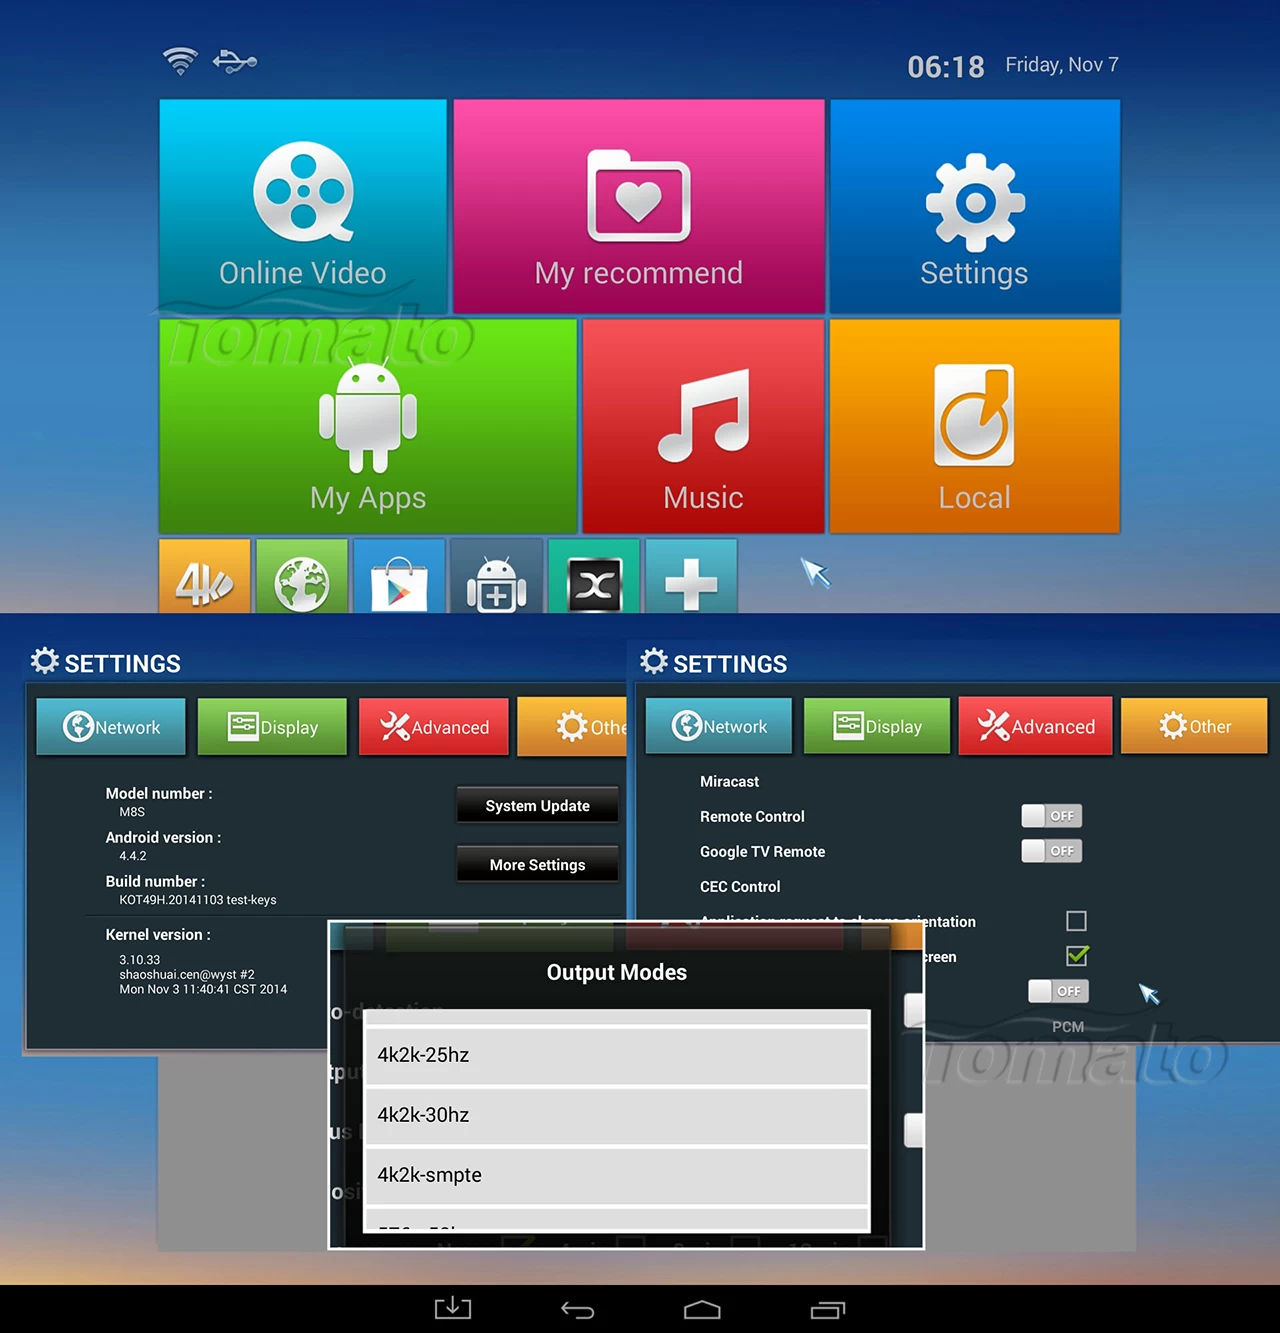 Quad Core TV Box TM8S TV Box Ultra HD 4K2K Amlogic S812 Google Android 4.4 TV Box TM8S